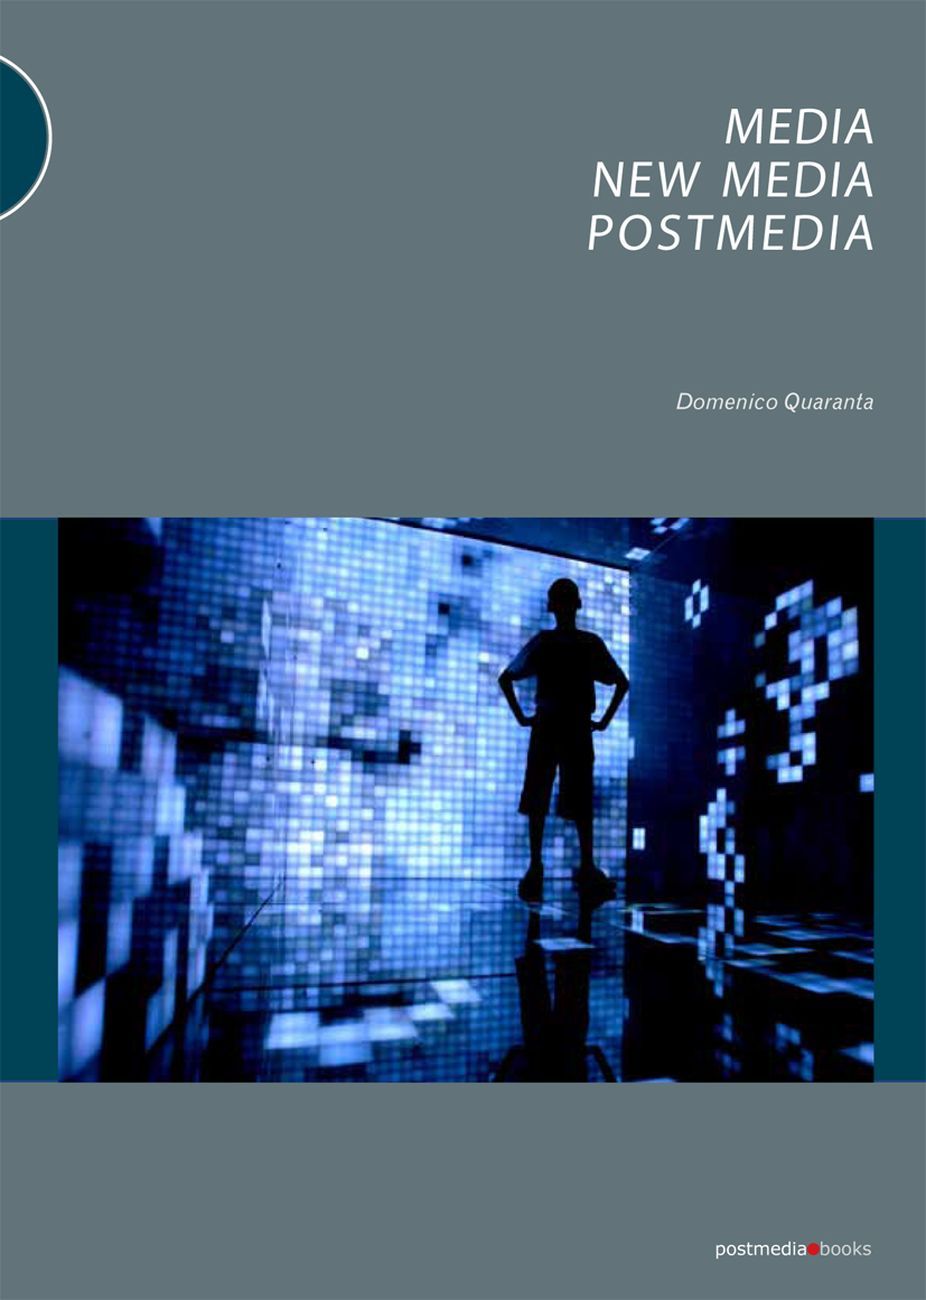 Domenico Quaranta – Media, New Media, Postmedia (Postmedia Books, Milano 2010)